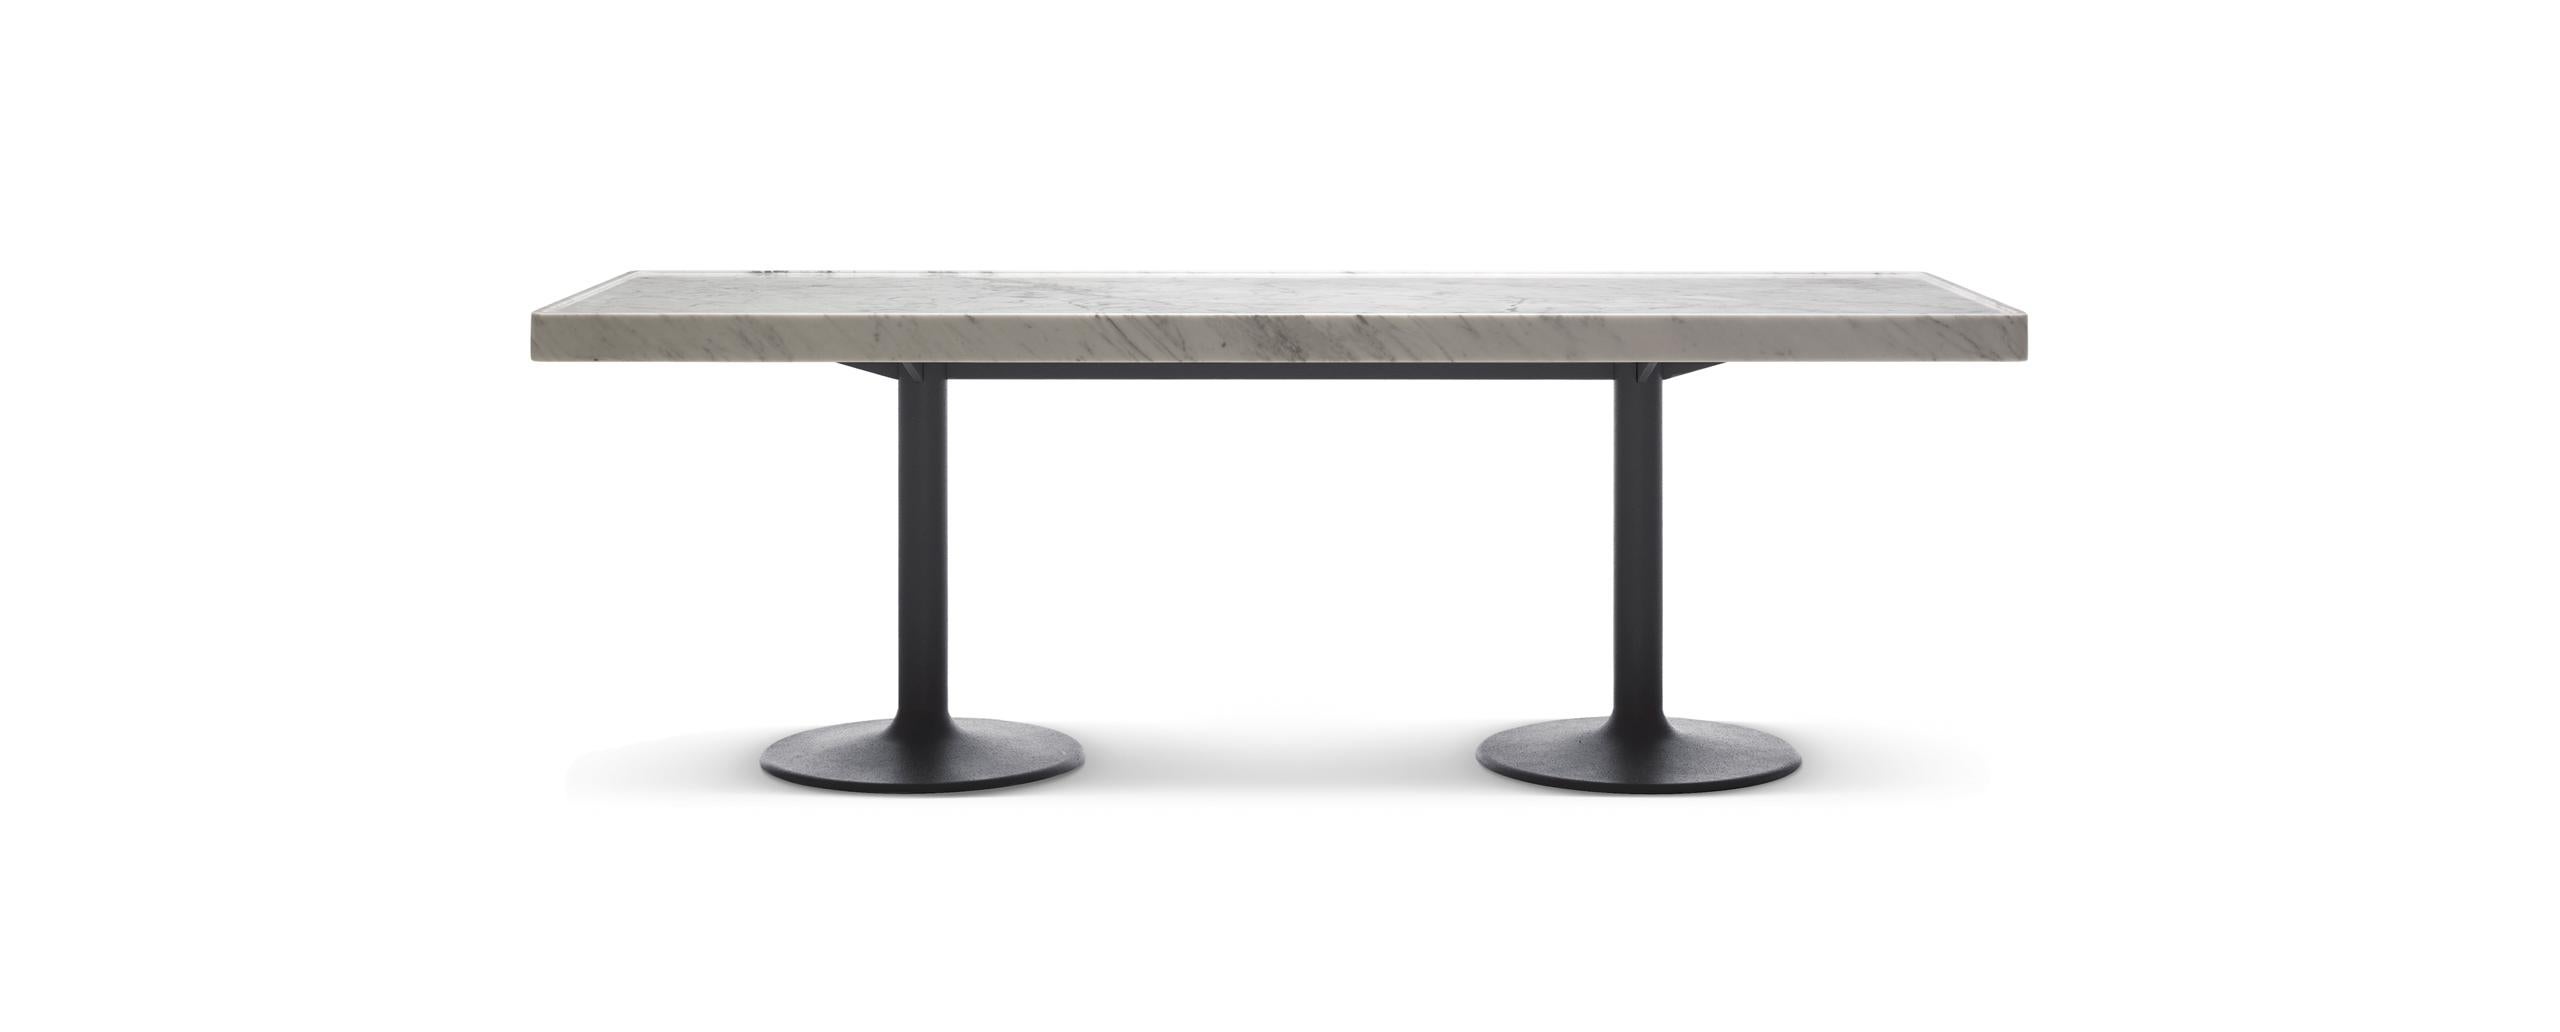 Table conçue par Le Corbusier, Pierre Jeanneret, Charlotte Perriand en 1935. Relancé par Cassina en 1985. Fabriqué par Cassina en Italie.

Conçue par Le Corbusier, Charlotte Perriand et Pierre Jeanneret, la table LC 11-P était disponible en deux